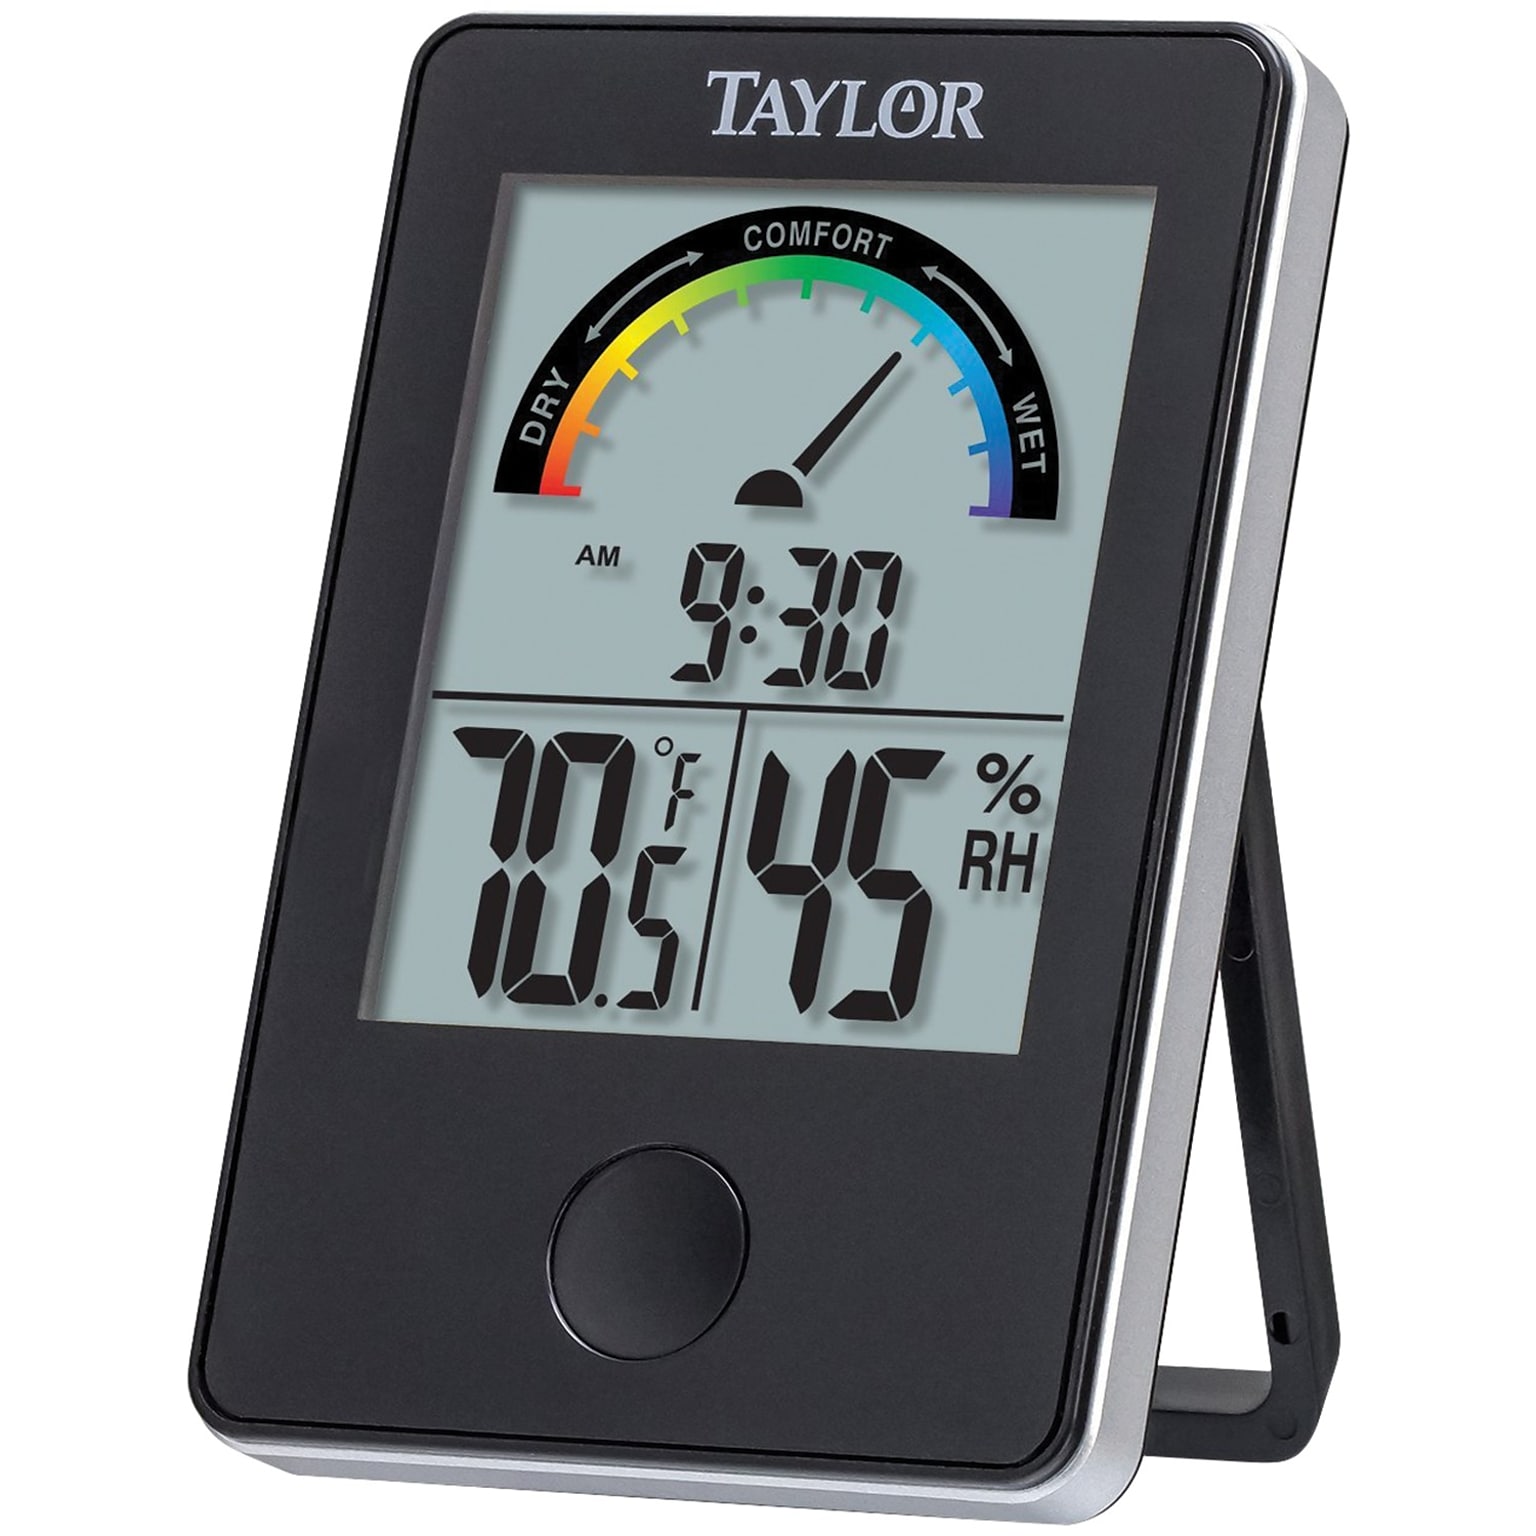 Taylor 1732 Indoor Digital Comfort Level Station With Hygrometer